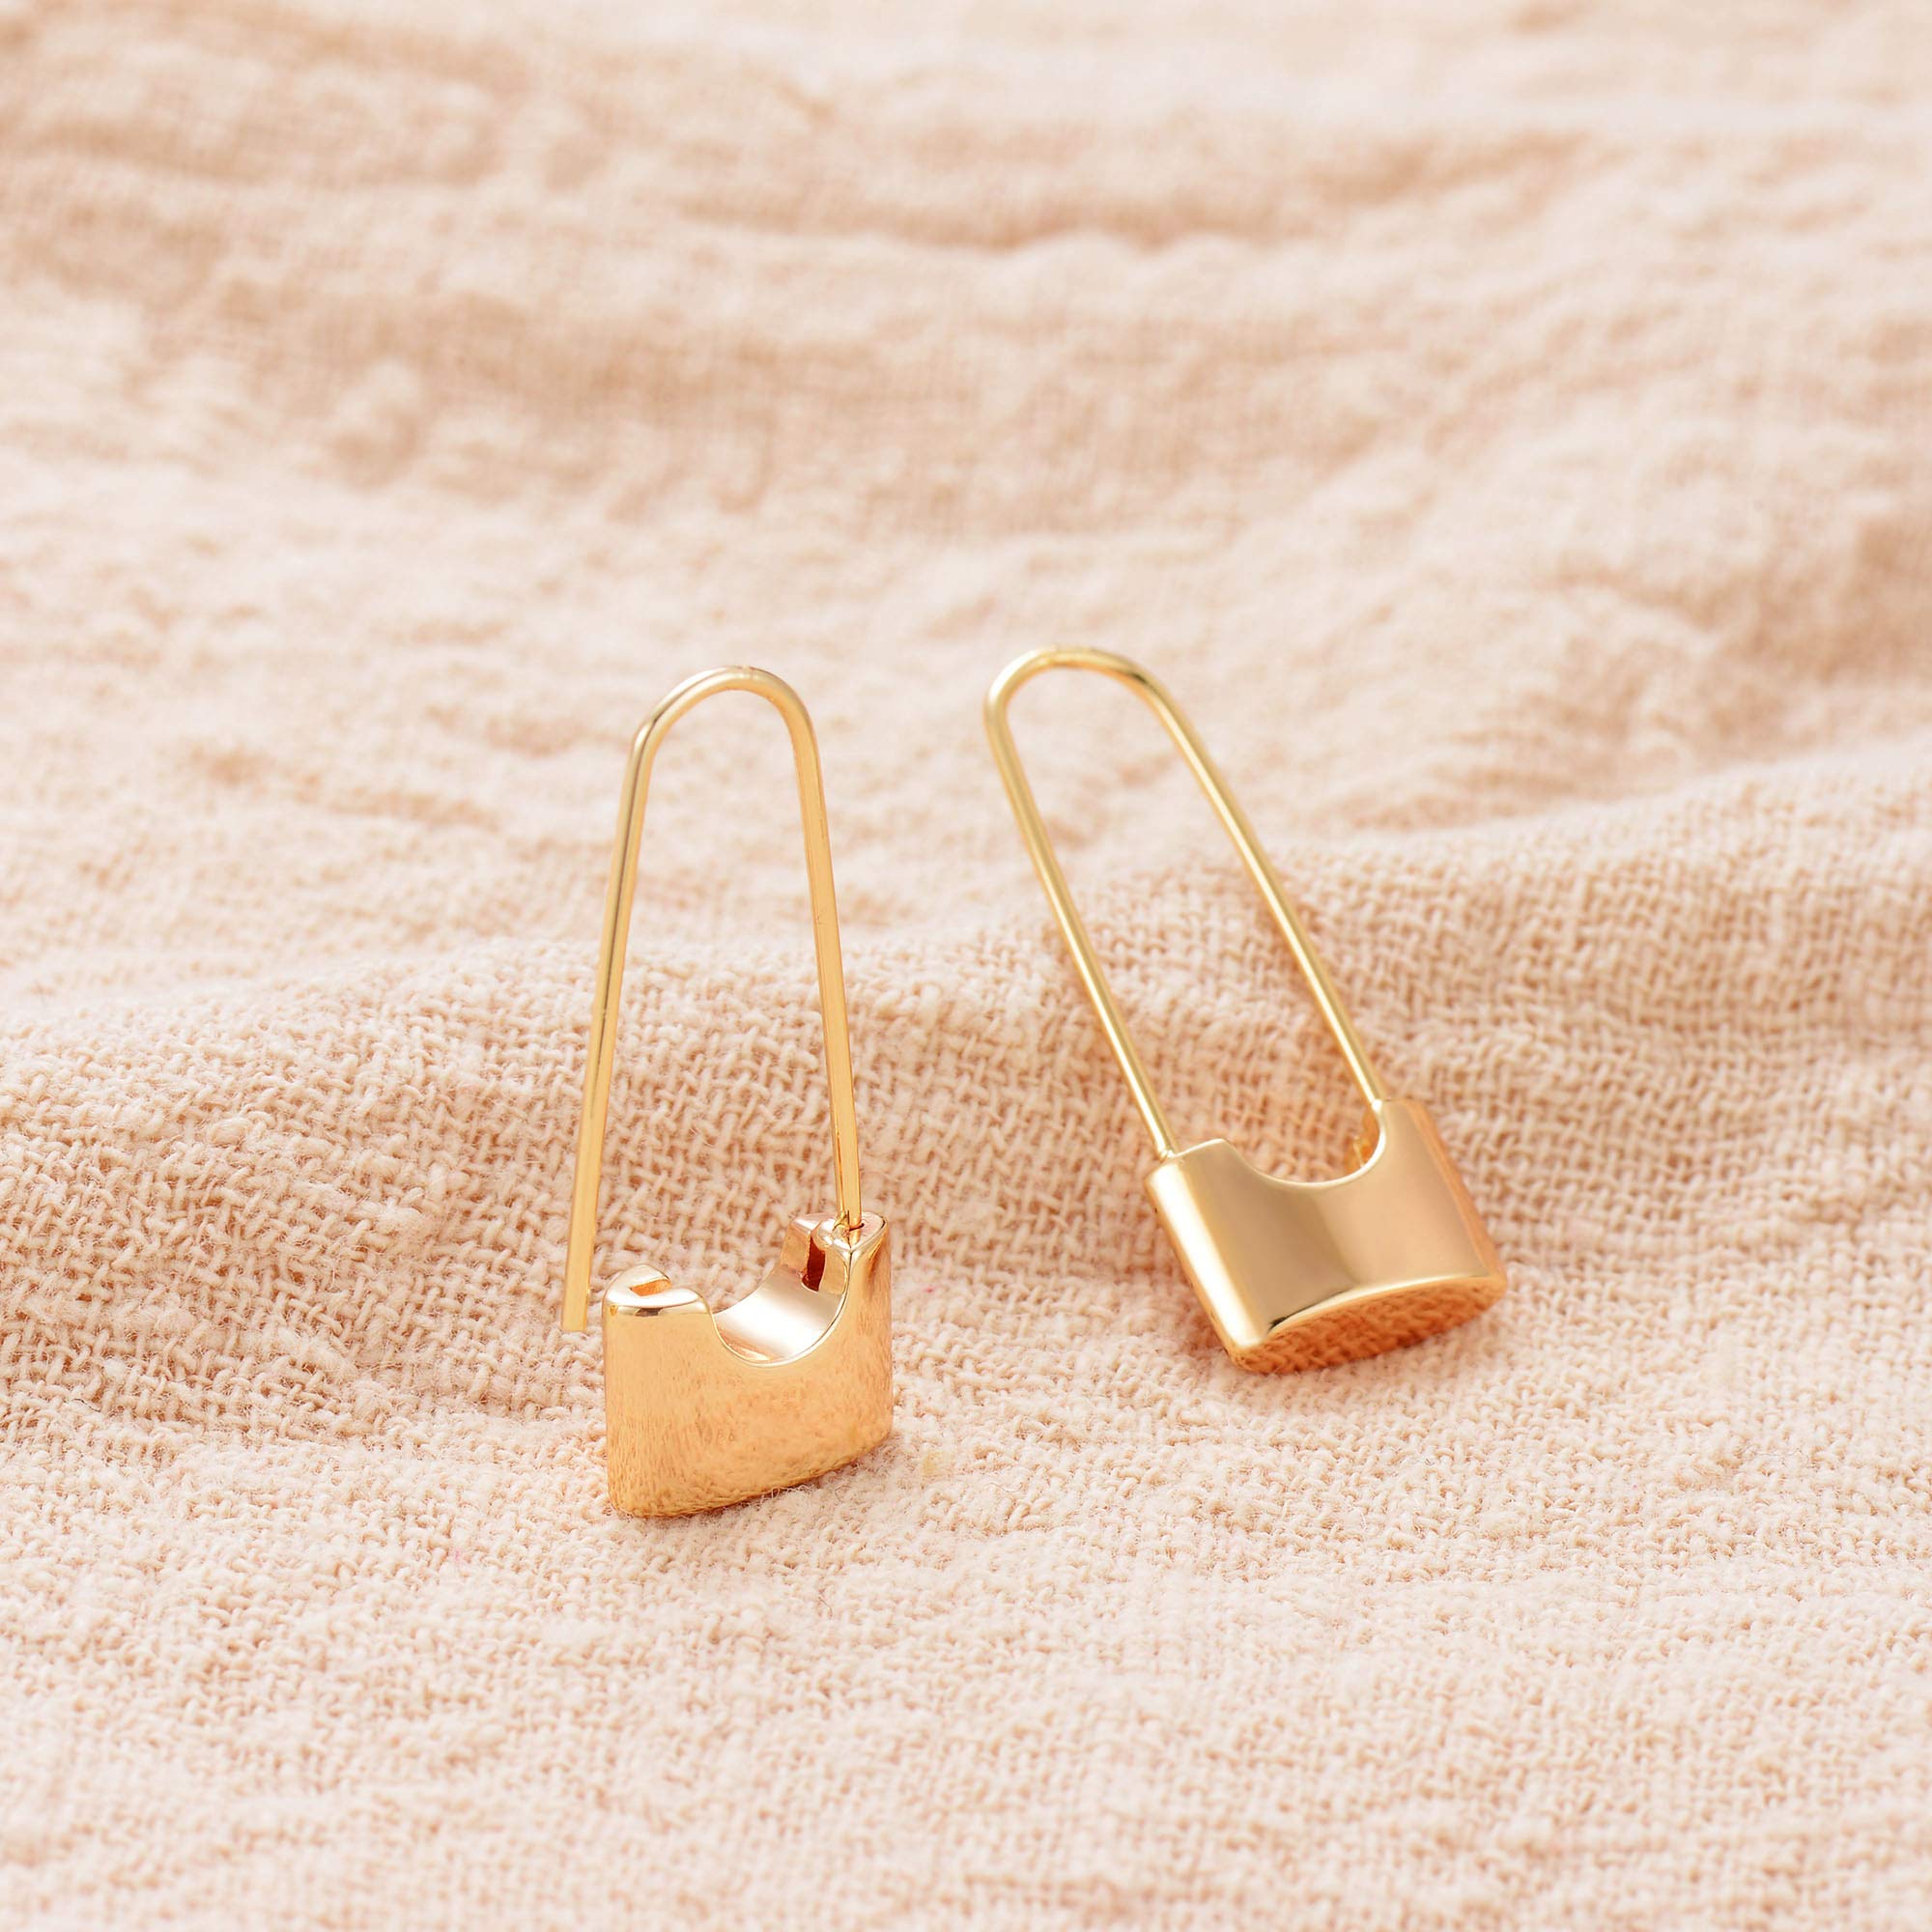 MEVECCO Tiny Cross Hoop Earrings 14K Gold Plated Dainty Minimalist Simple Faith Cross Dangle Huggie Earrings For Women Girls Jewelry Gift